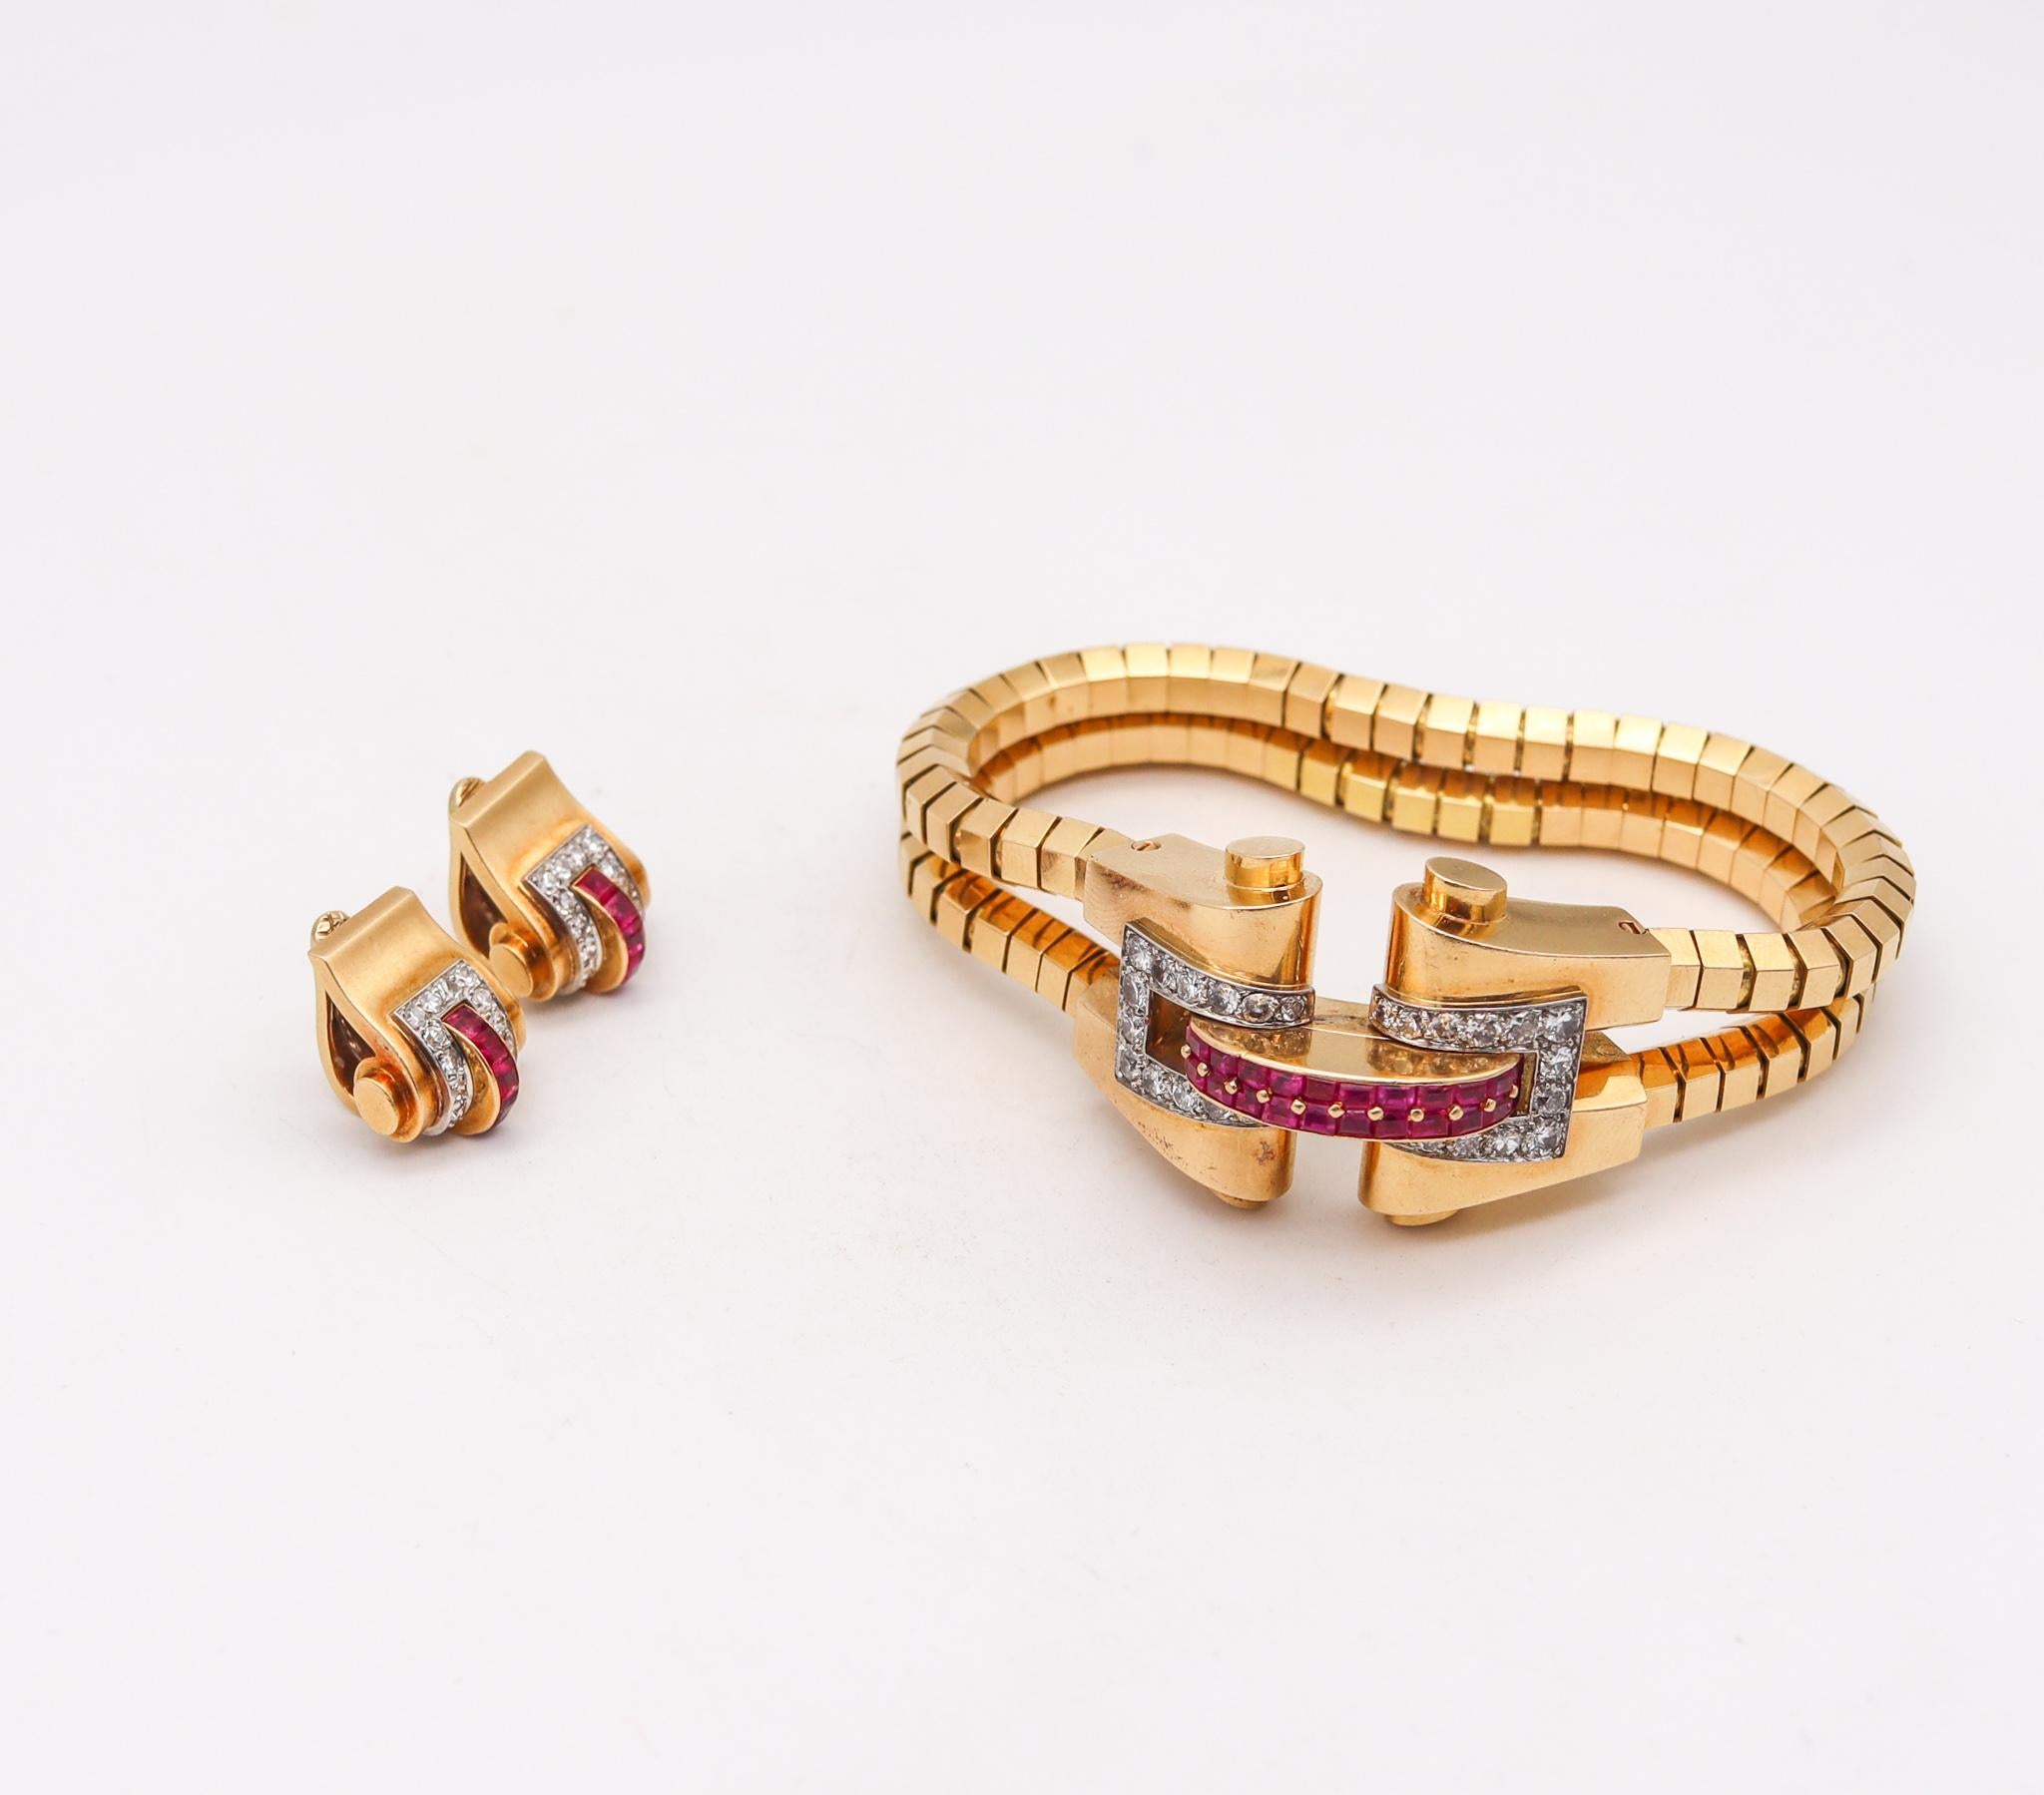 French Cut Boucheron 1937 Paris Bracelet & Earrings Suite 18Kt Gold 6.88 Ct Diamonds Rubies For Sale